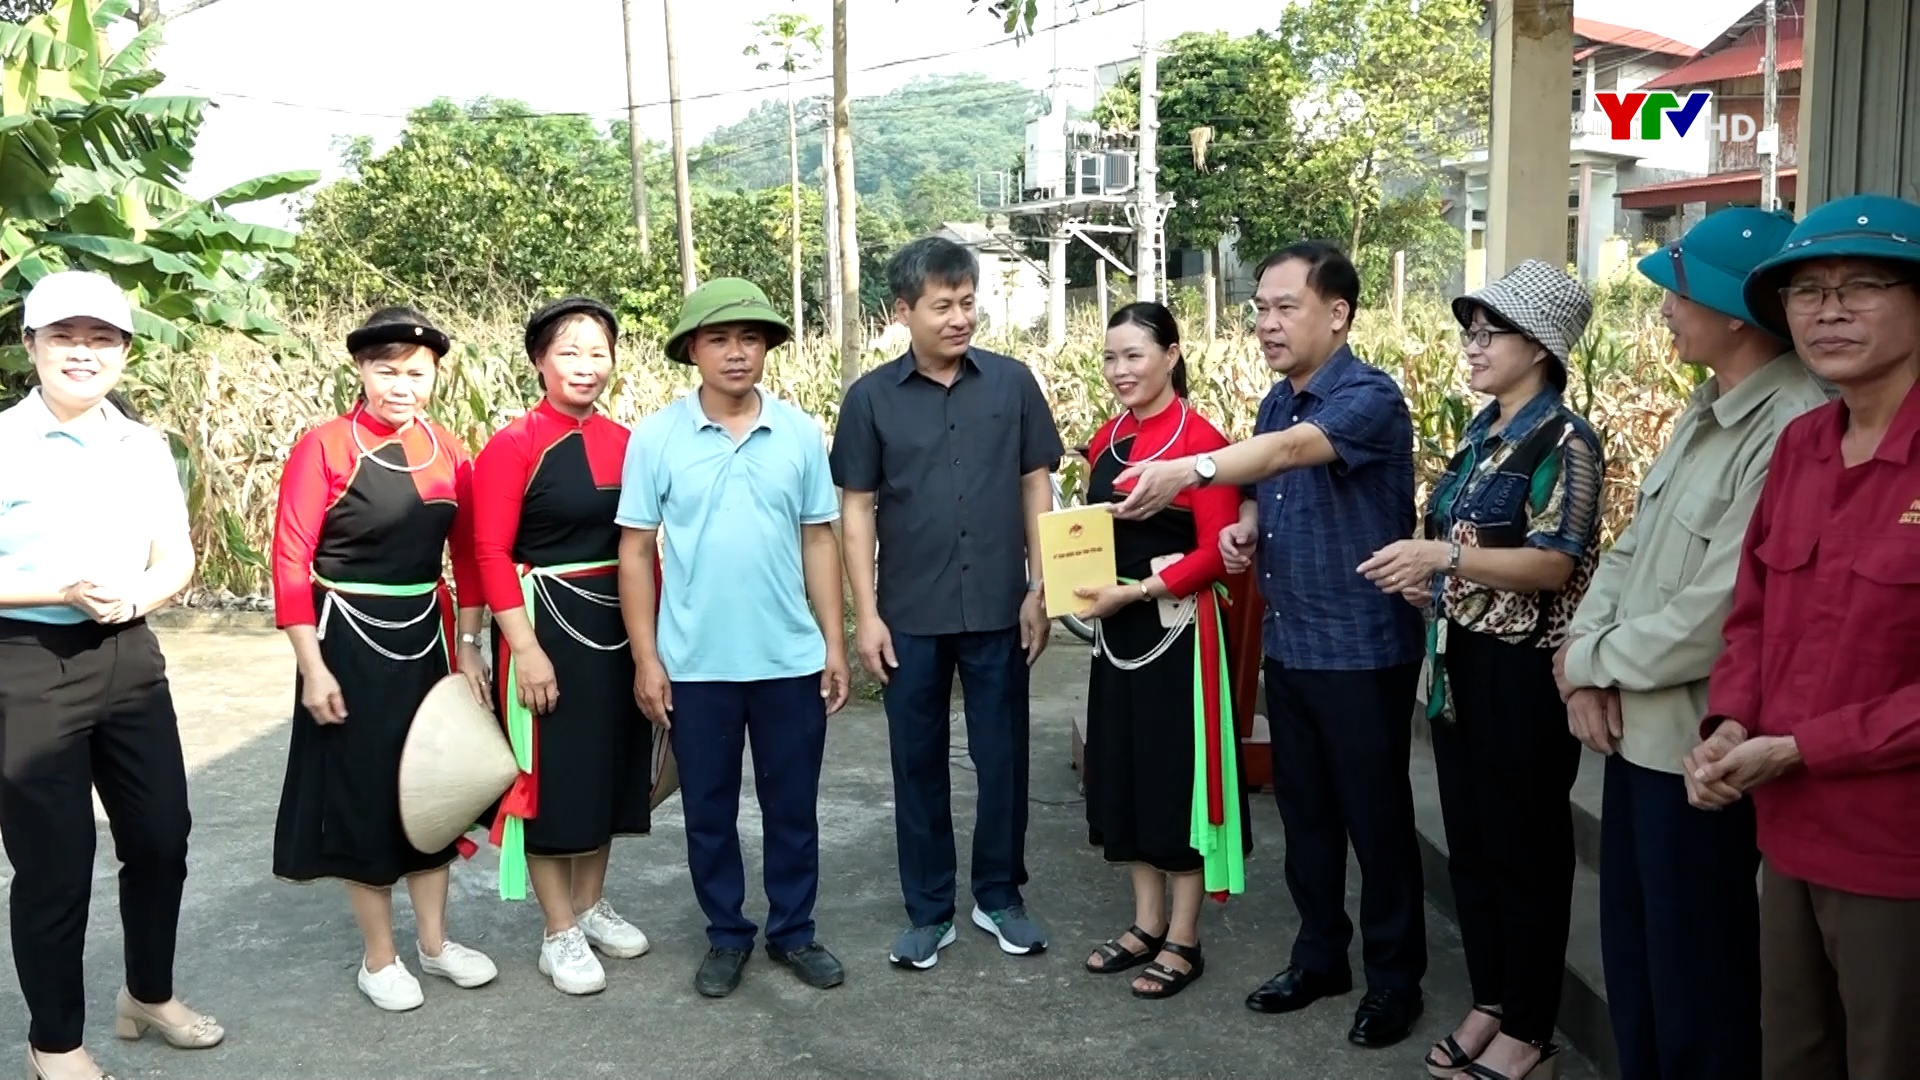 Đồng chí Phó Chủ tịch UBND tỉnh Ngô Hạnh Phúc tham gia hoạt động ngày cuối tuần cùng dân tại thôn Linh Môn 1, xã Yên Bình, huyện Yên Bình